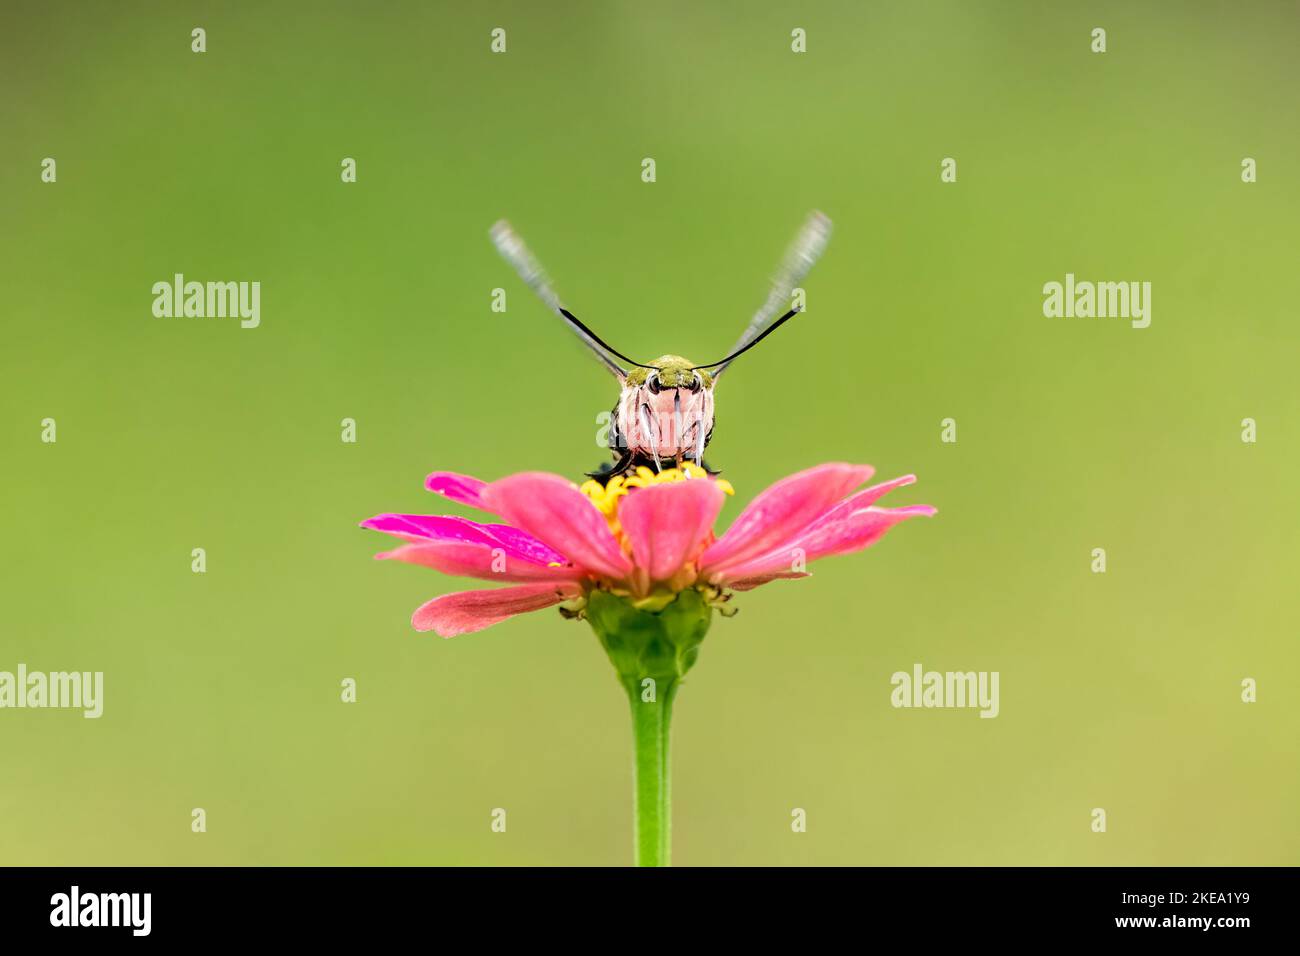 Primer plano de una hermosa mariposa (Pellucid Hawk Moth) sentado una licencia / flor durante la primavera en un día soleado Foto de stock